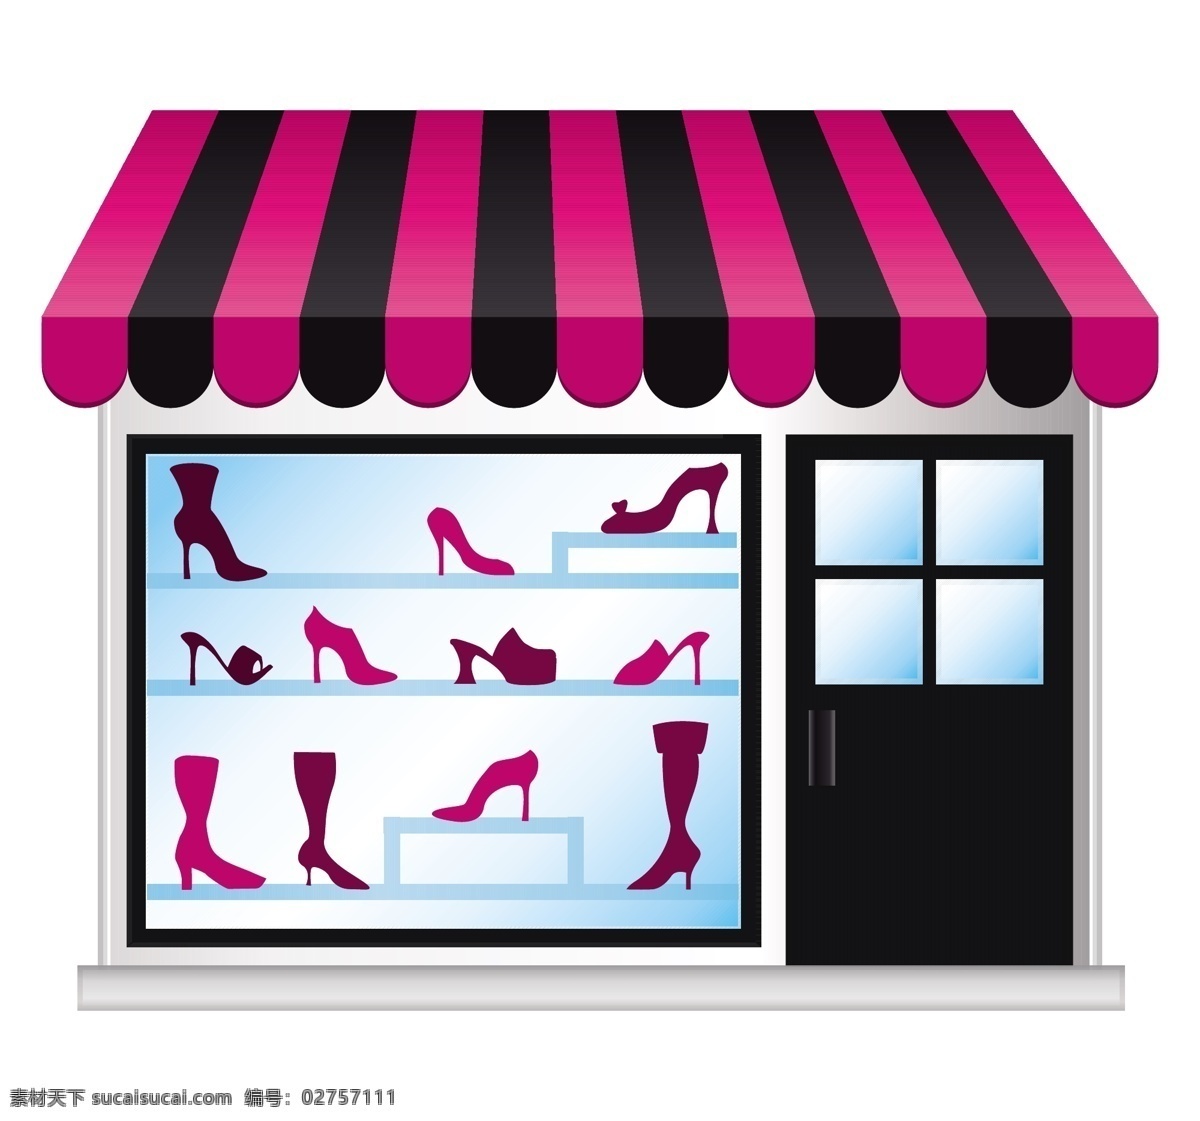 时尚 小 商店 矢量图 shopping 橱窗 购物 剪影 鞋 矢量 小商店 装饰素材 展示设计